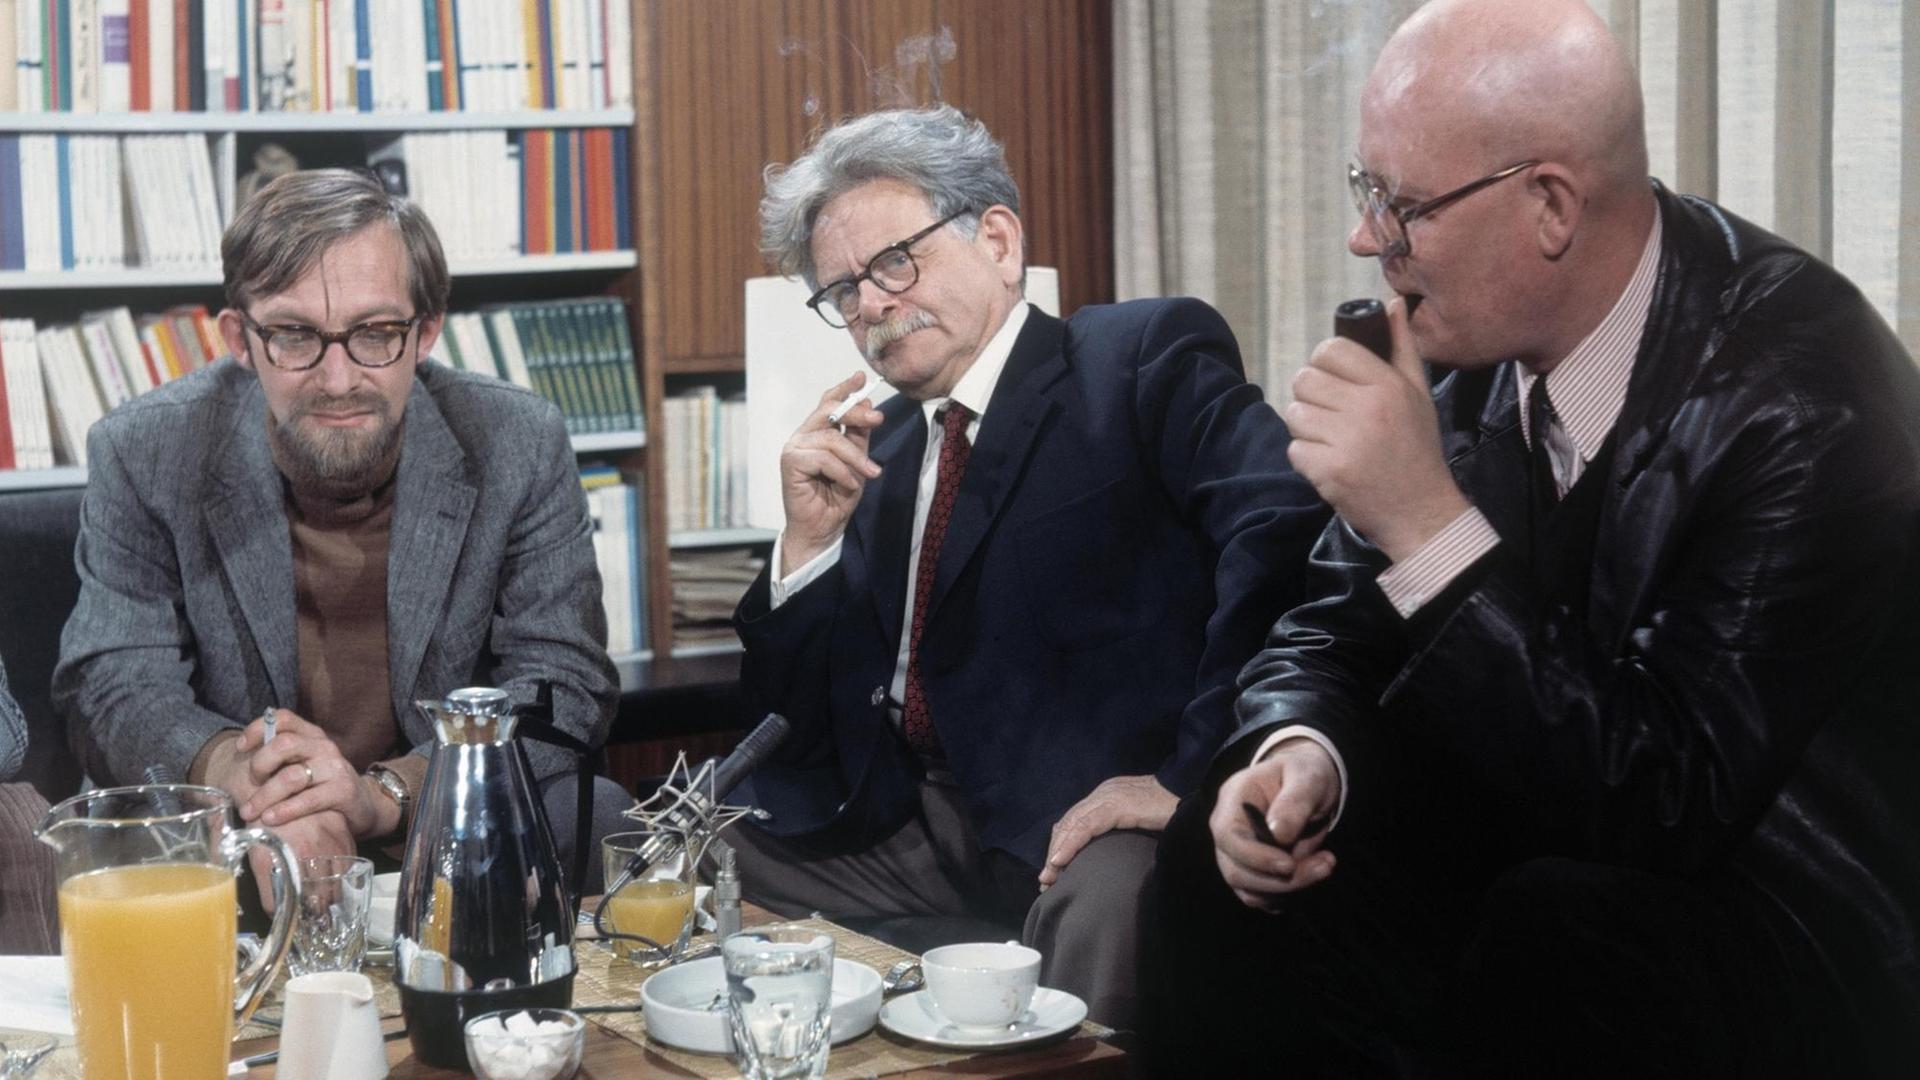 Die Autoren Lars Gustafsson, Elias Canetti und Uwe Johnson (von links) sitzen im Halbkreis um einen Tisch und diskutieren.